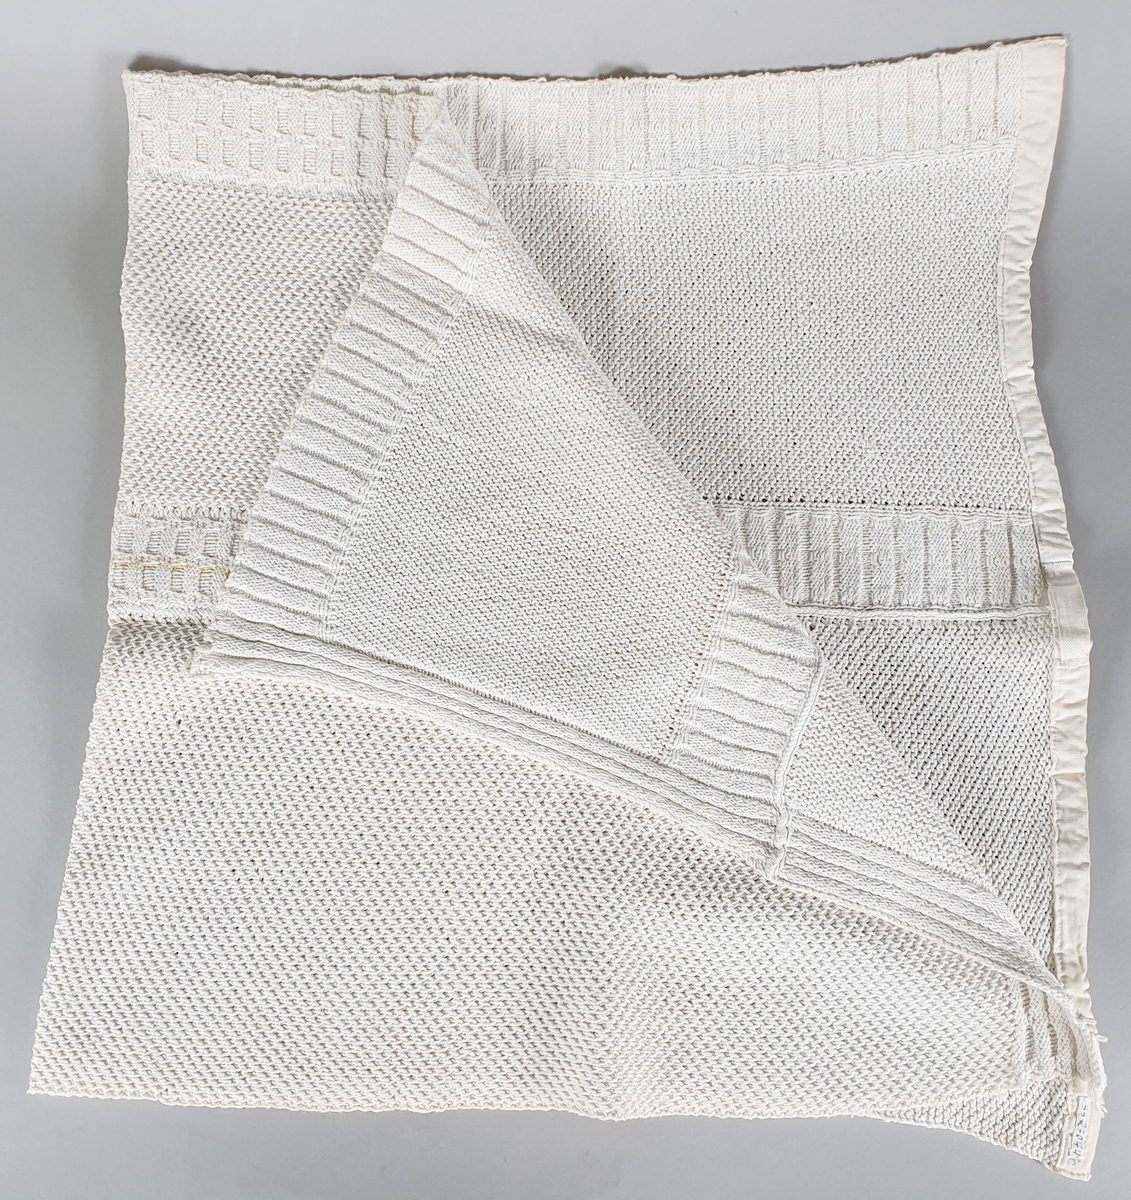 Tre strikkede kjøkkenhåndklær av bomull, kantet med bomullsbånd.